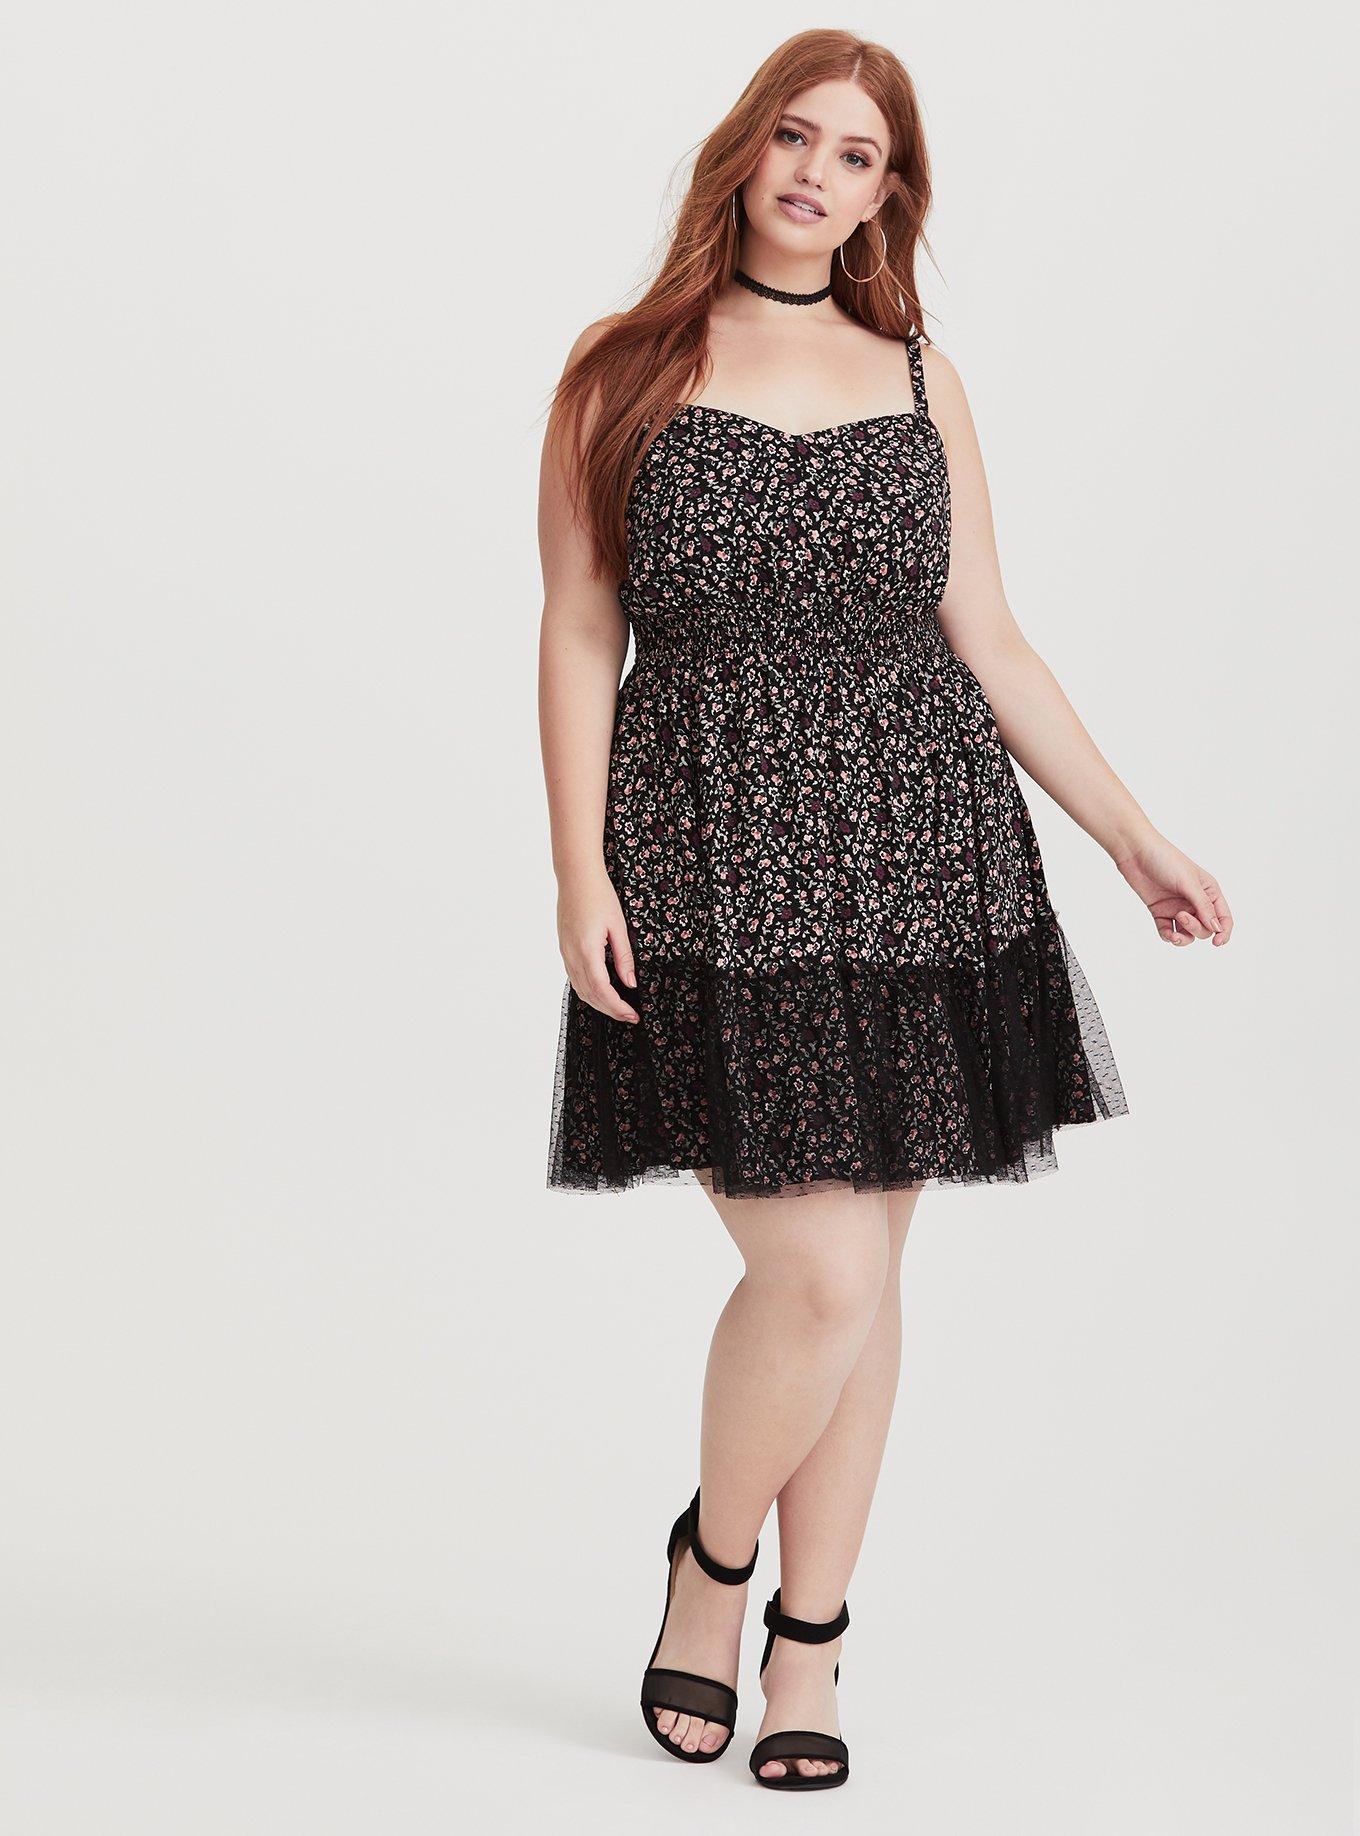 Plus Size - Black Floral Lace Overlay Challis Dress - Torrid